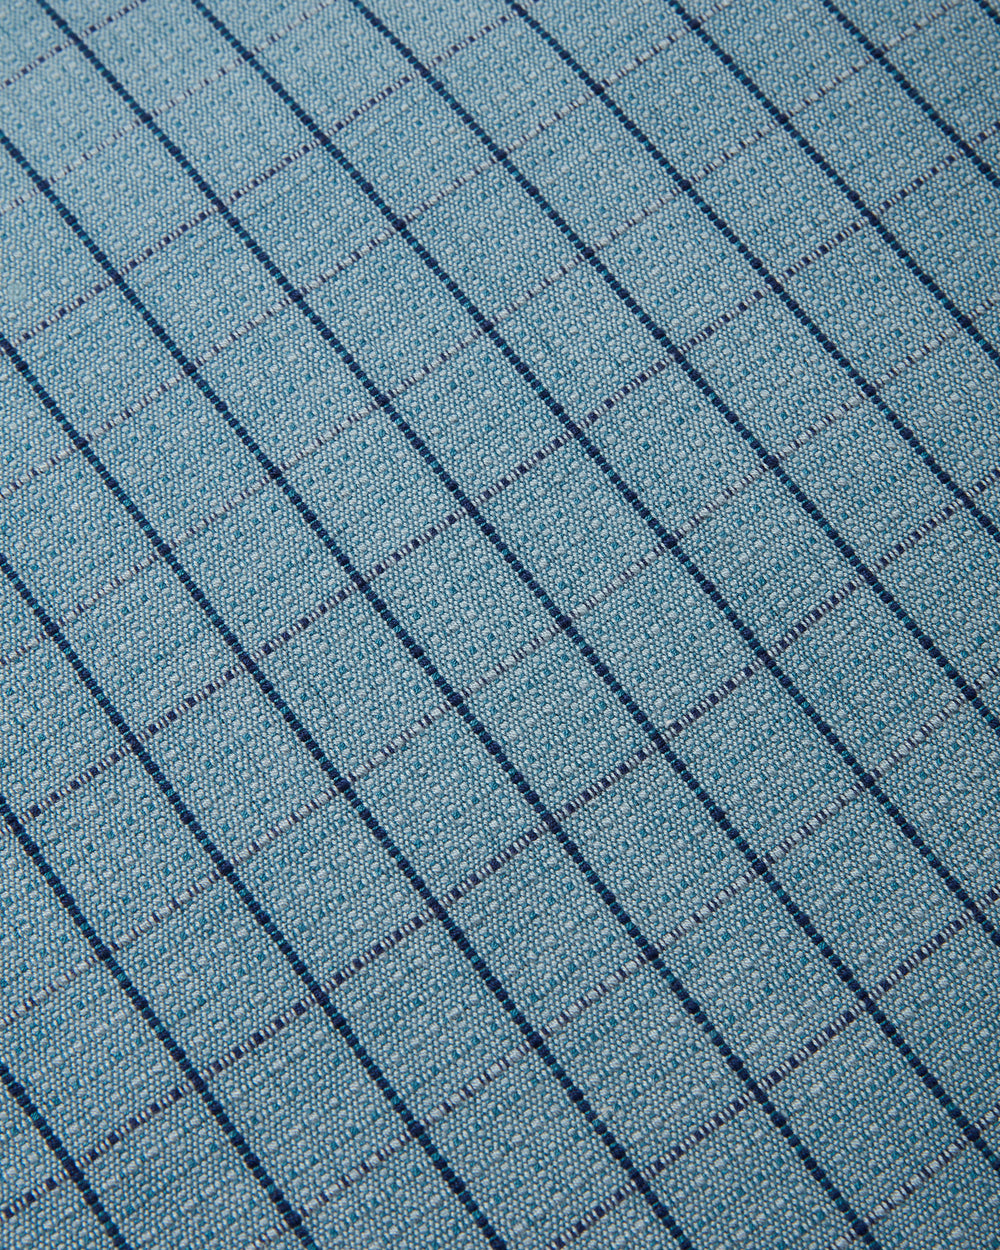 Grid Duvet Cover - Blue